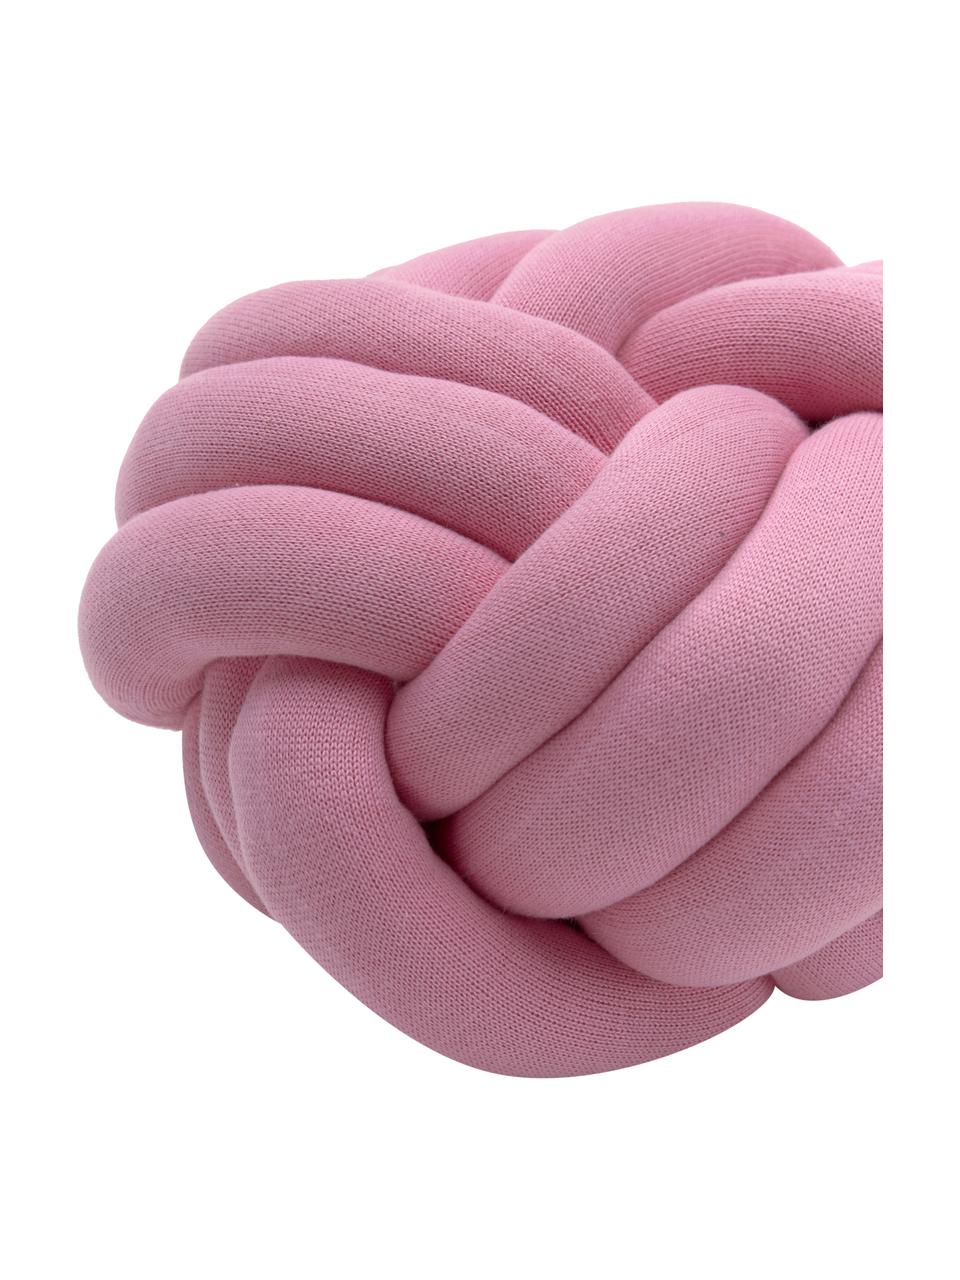 Geknoopt kussen Twist in roze, Roze, Ø 30 cm